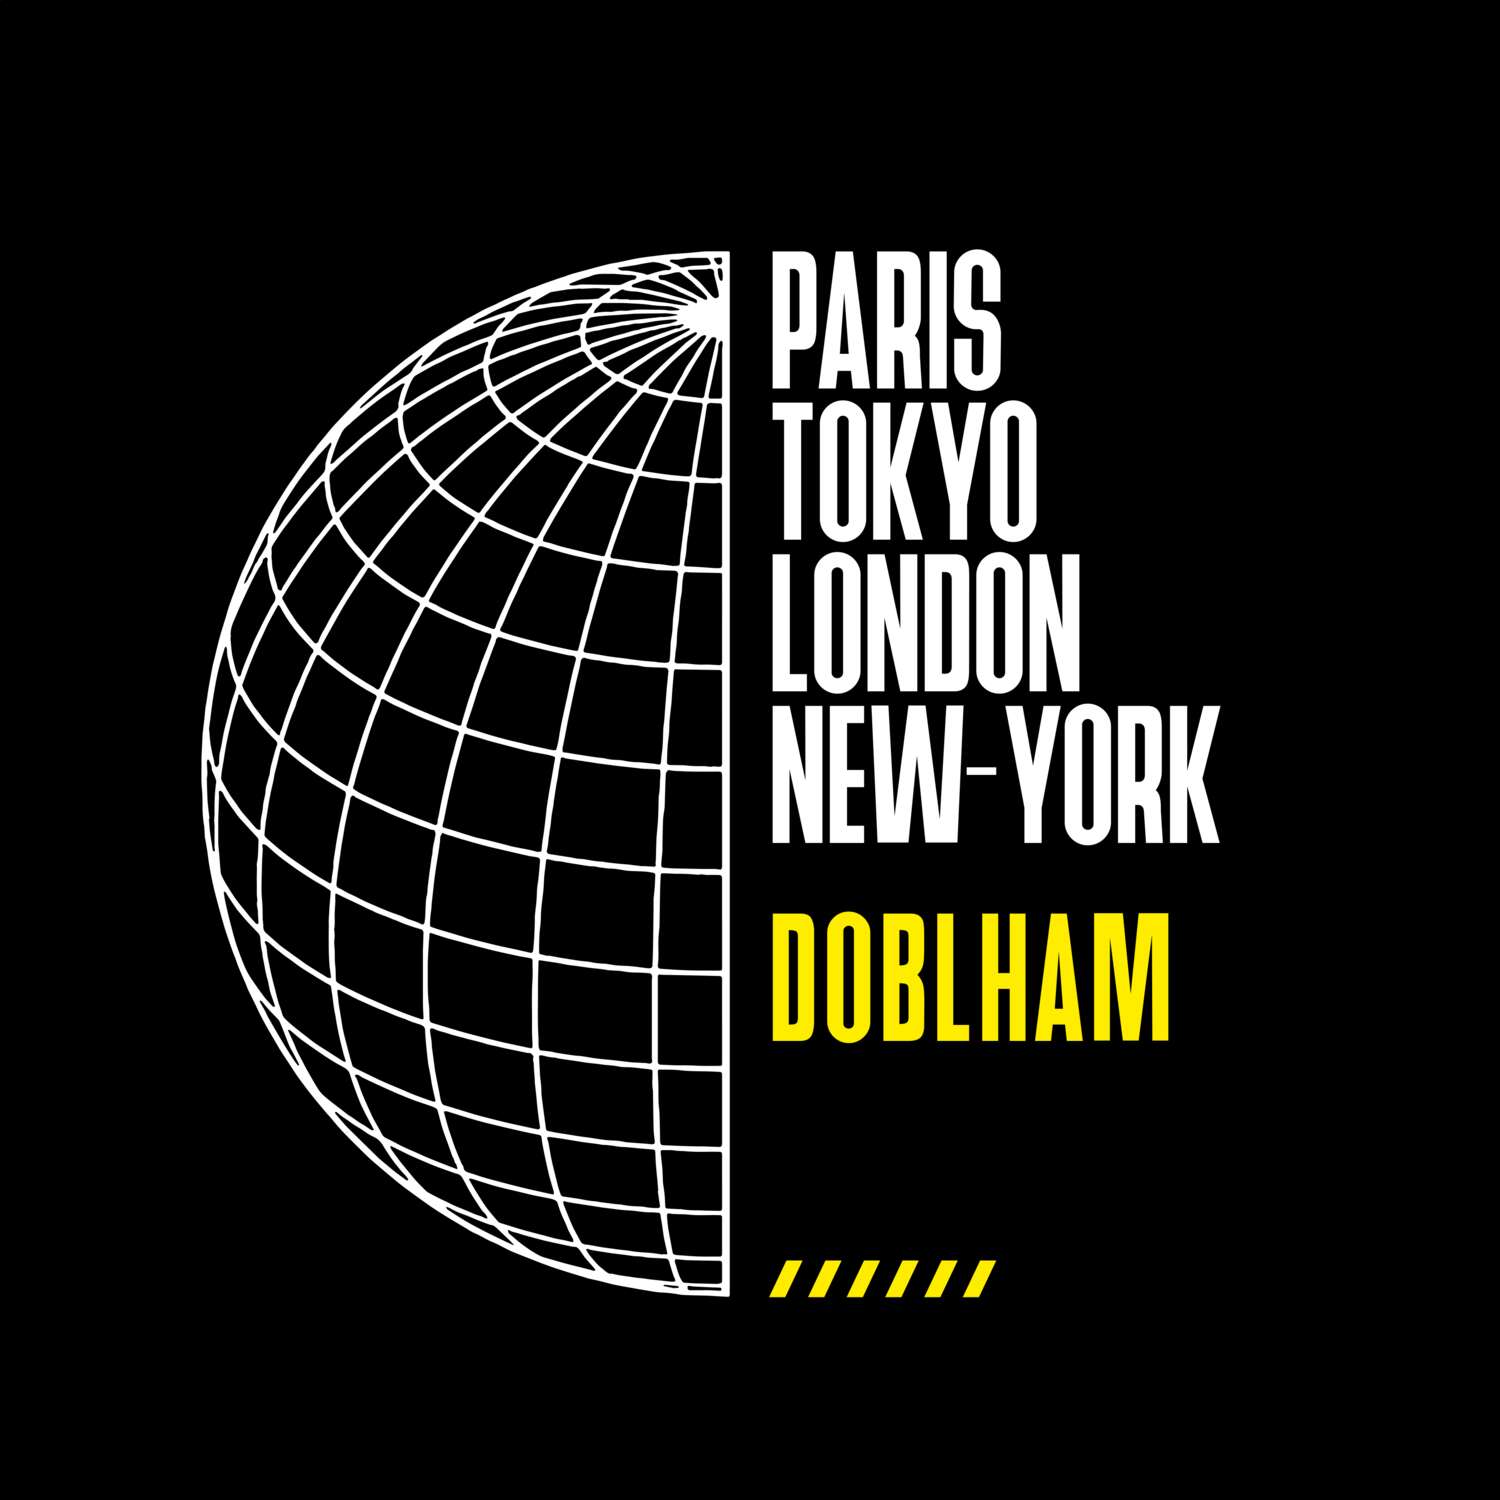 Doblham T-Shirt »Paris Tokyo London«